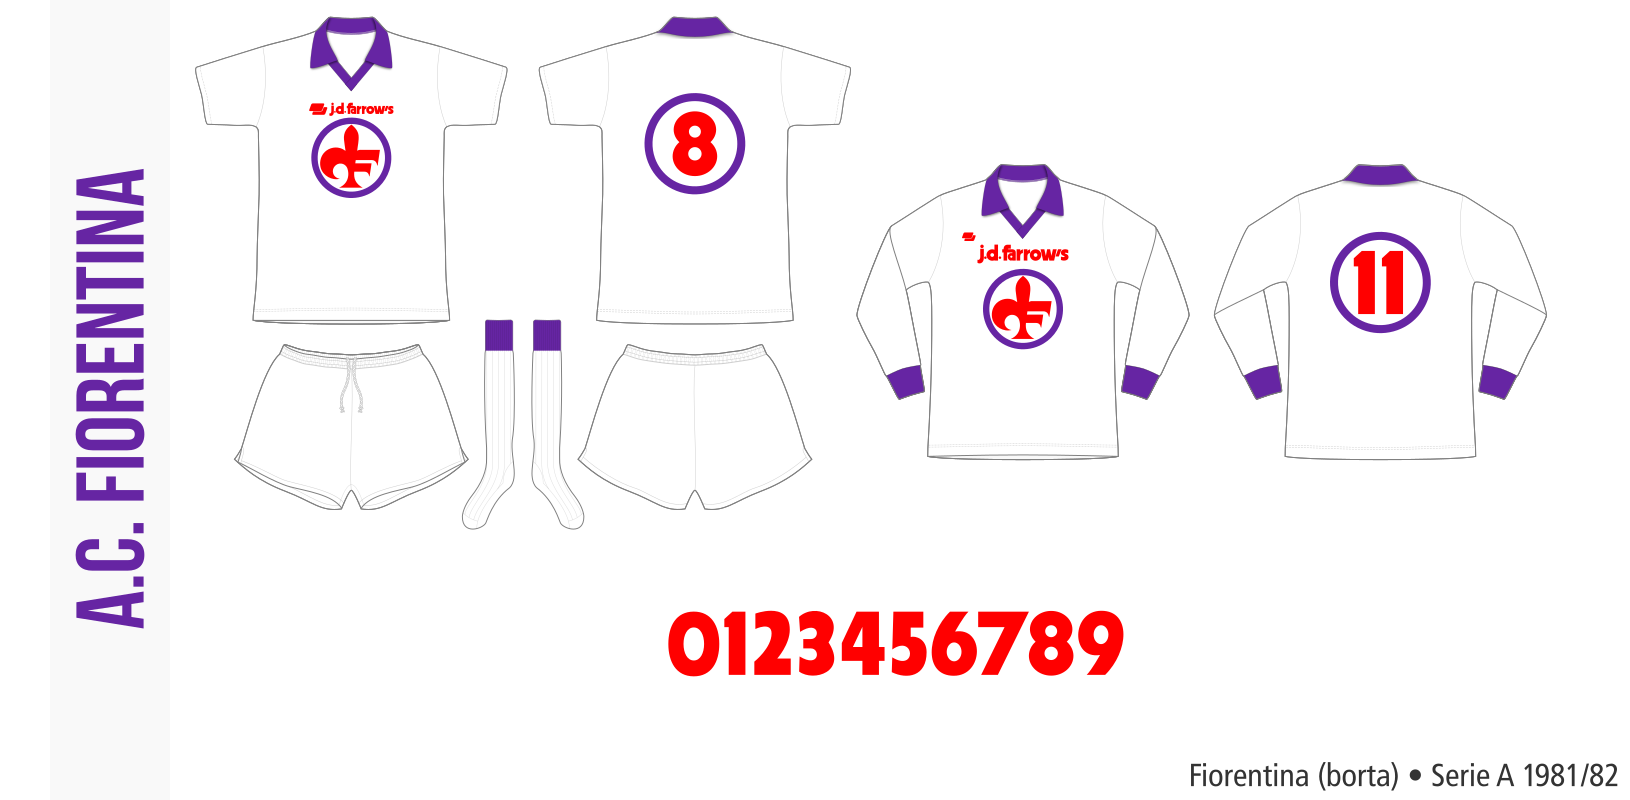 Fiorentina 1981/82 (borta)